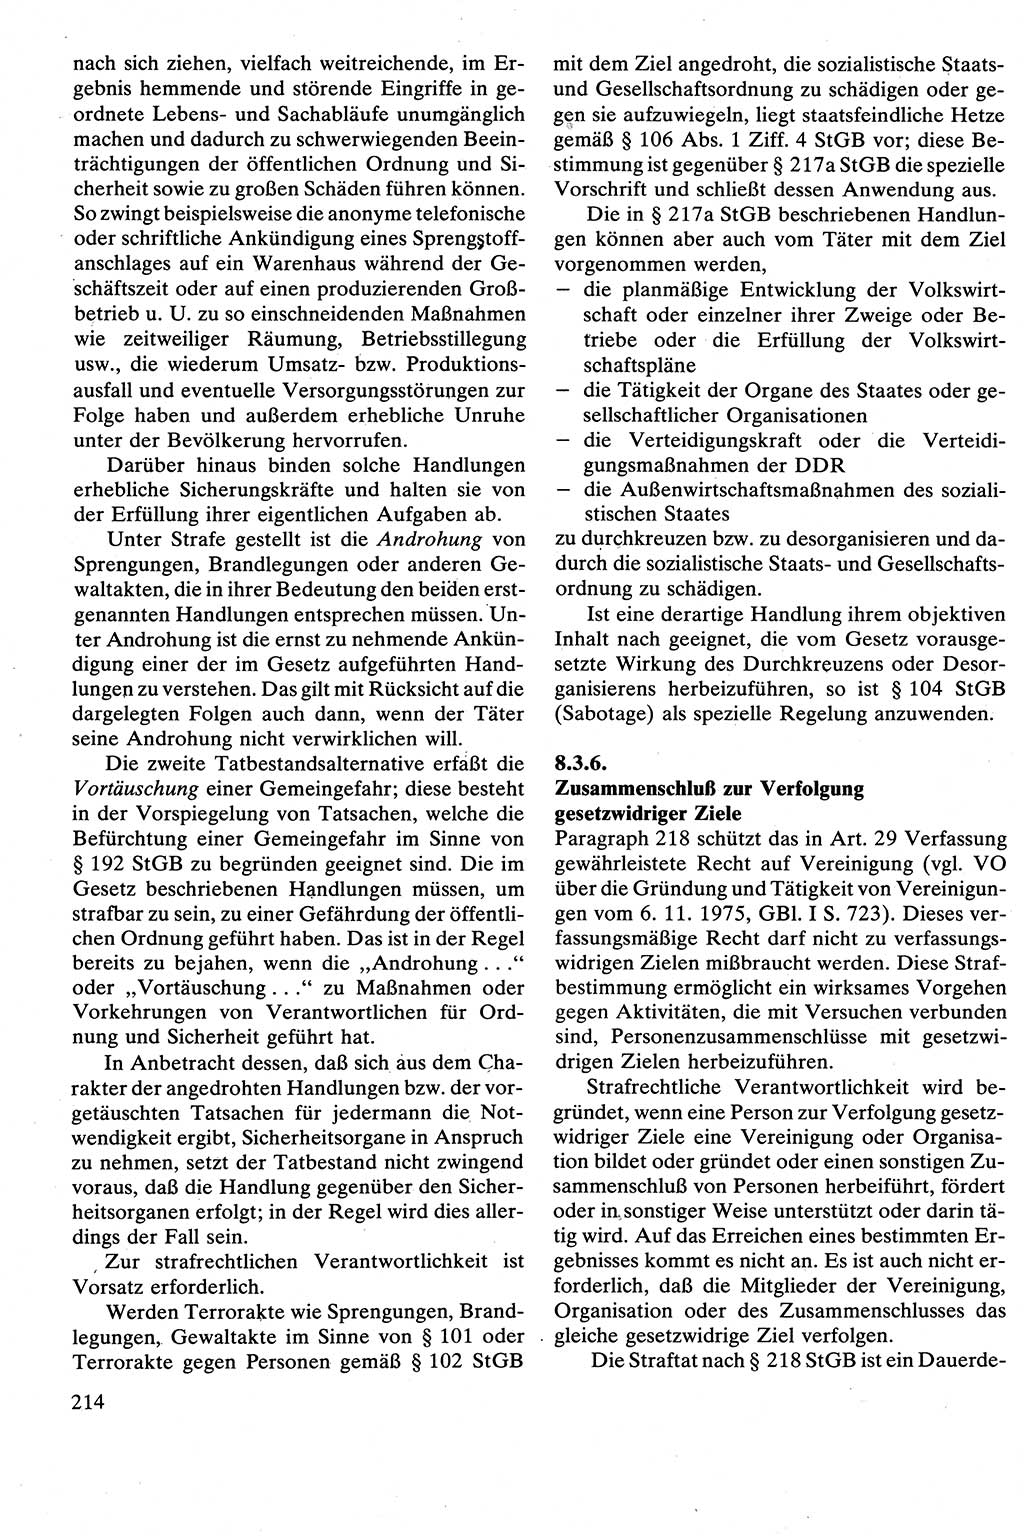 Strafrecht [Deutsche Demokratische Republik (DDR)], Besonderer Teil, Lehrbuch 1981, Seite 214 (Strafr. DDR BT Lb. 1981, S. 214)